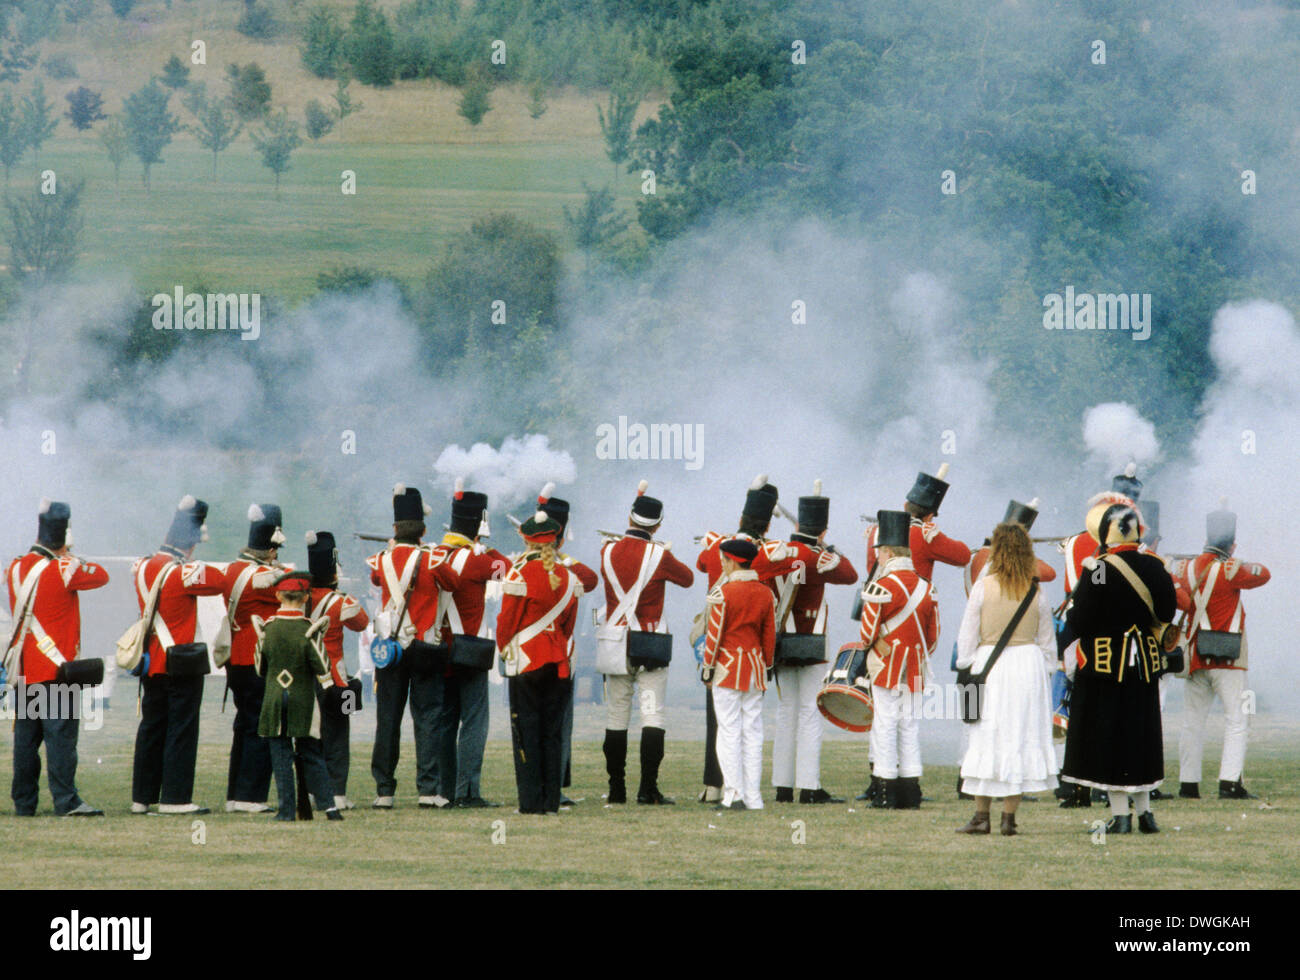 Feu de mousquet britannique, 1815, les soldats déployés comme à la bataille de Waterloo et dans la guerre de la péninsule, reconstitution historique soldat armée fumée fusils tirant des uniformes uniforme England UK Royaume-Uni Angleterre bataille Banque D'Images